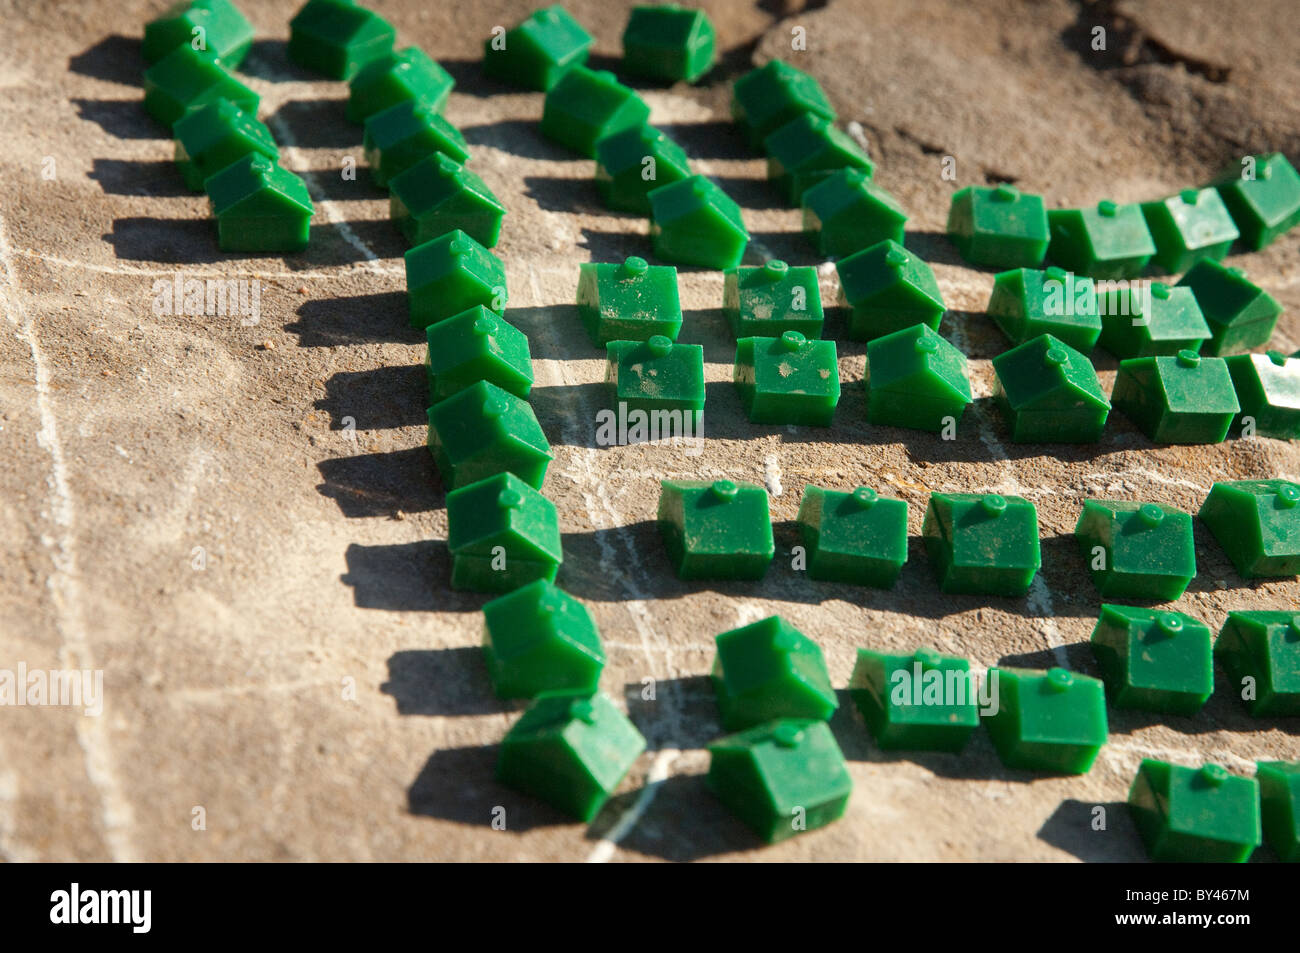 Maisons en plastique à partir d'un jeu de conseil populaire organisé dans les quartiers '' dans le centre du Texas la saleté. Banque D'Images